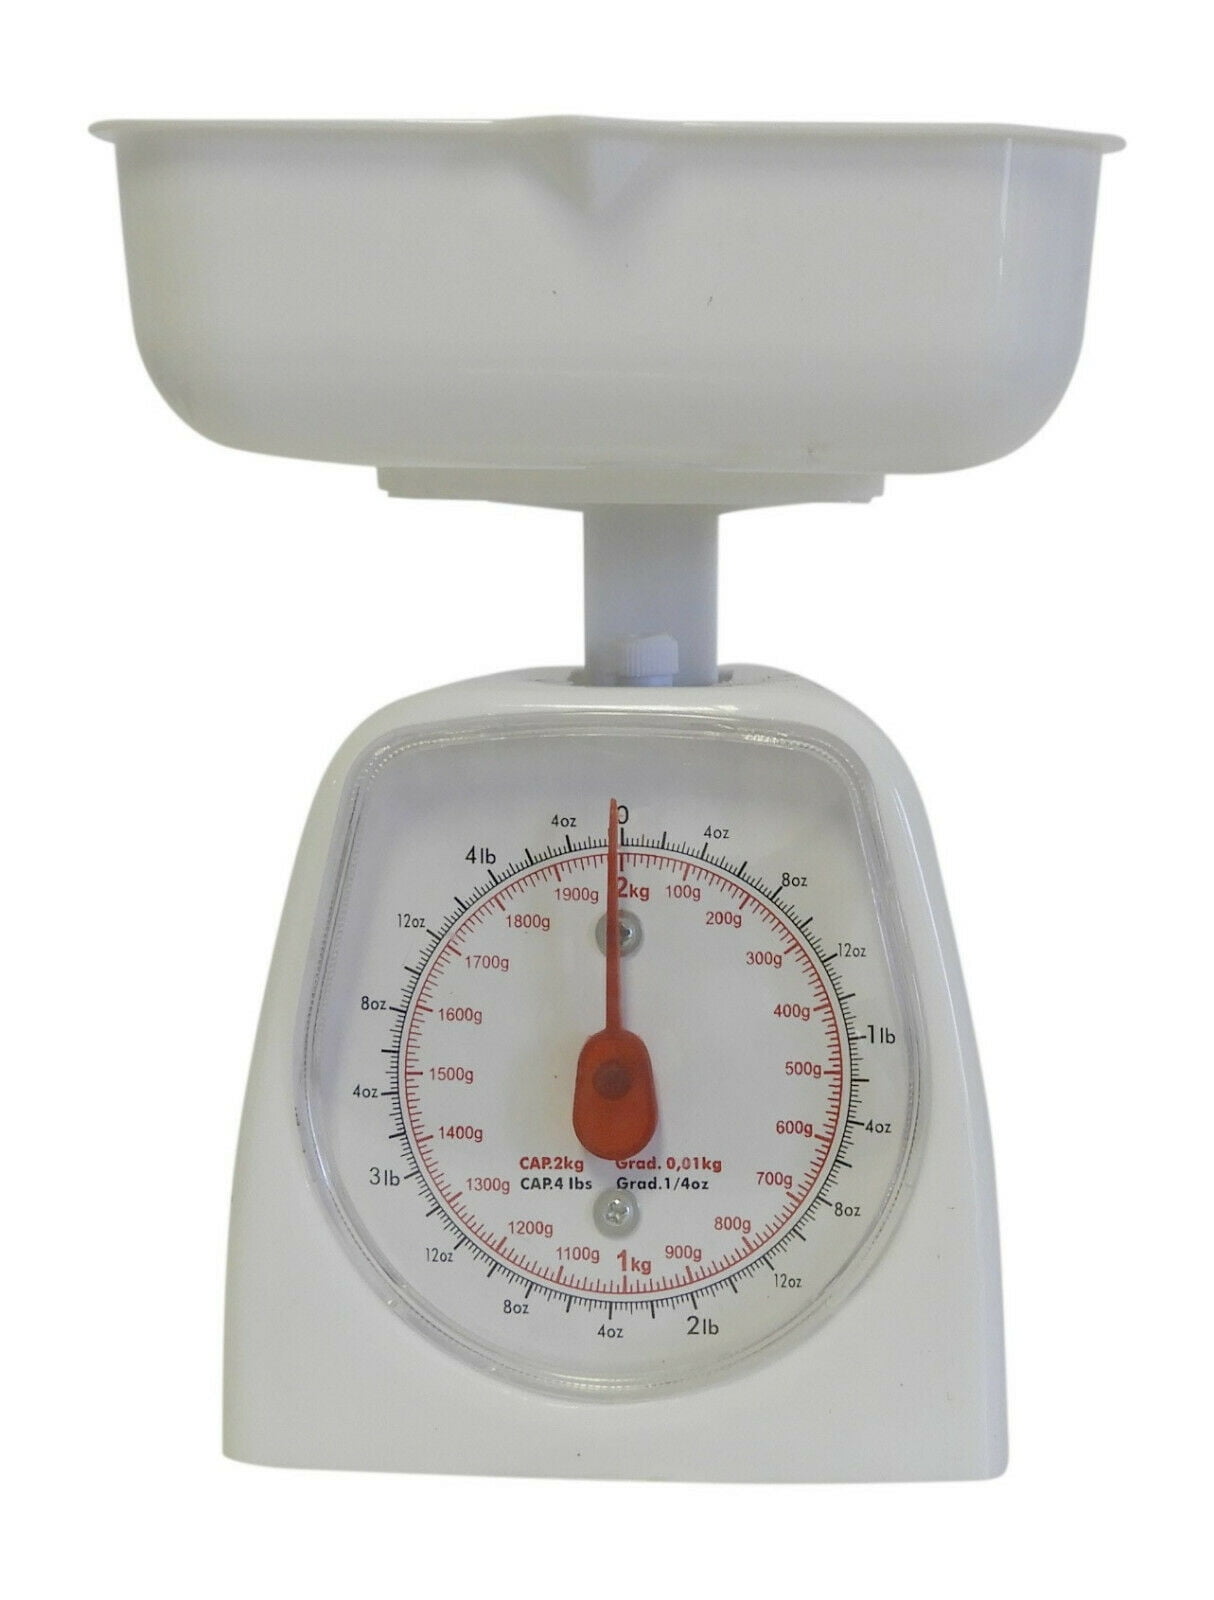 UniqueWare mechanical kitchen scale 5kg/11 lb capacity